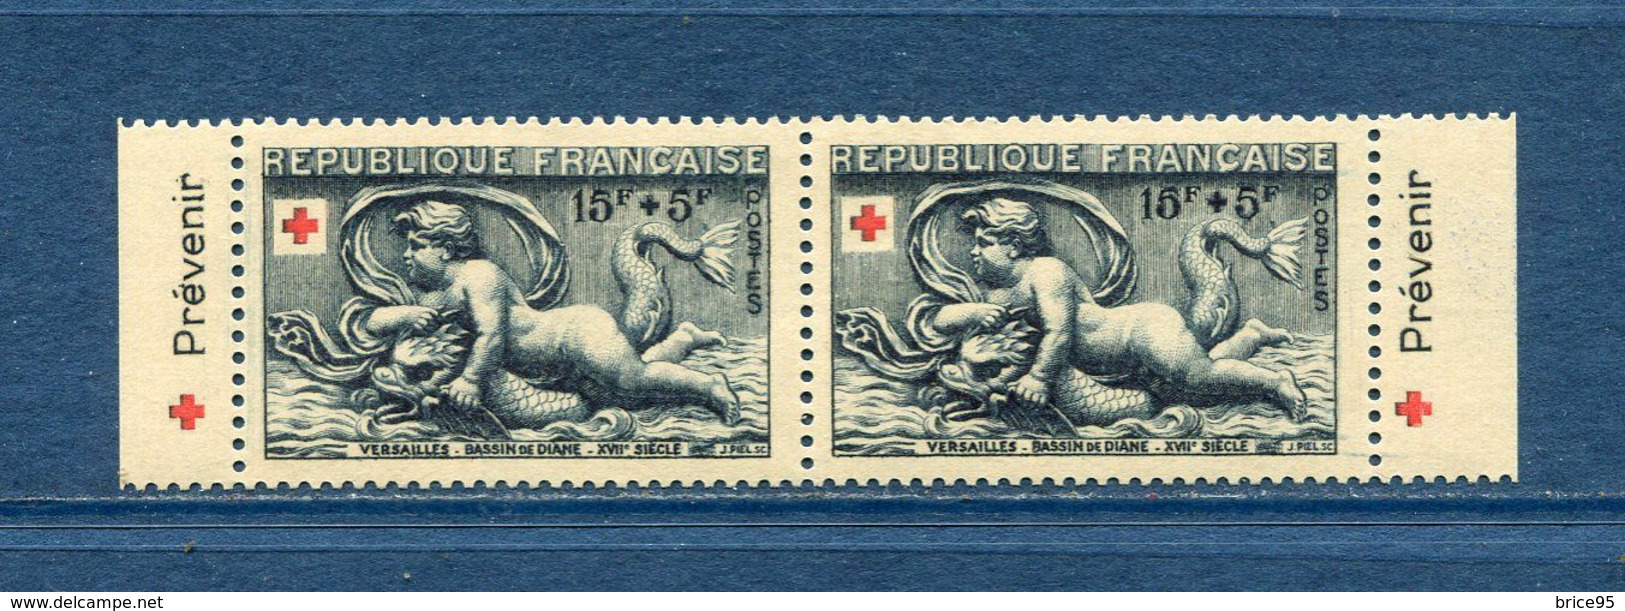 France - Croix Rouge - érinnophilie - Vignette Carnet Croix Rouge 1952 - Neuf Sans Charnière - 1952 - Red Cross